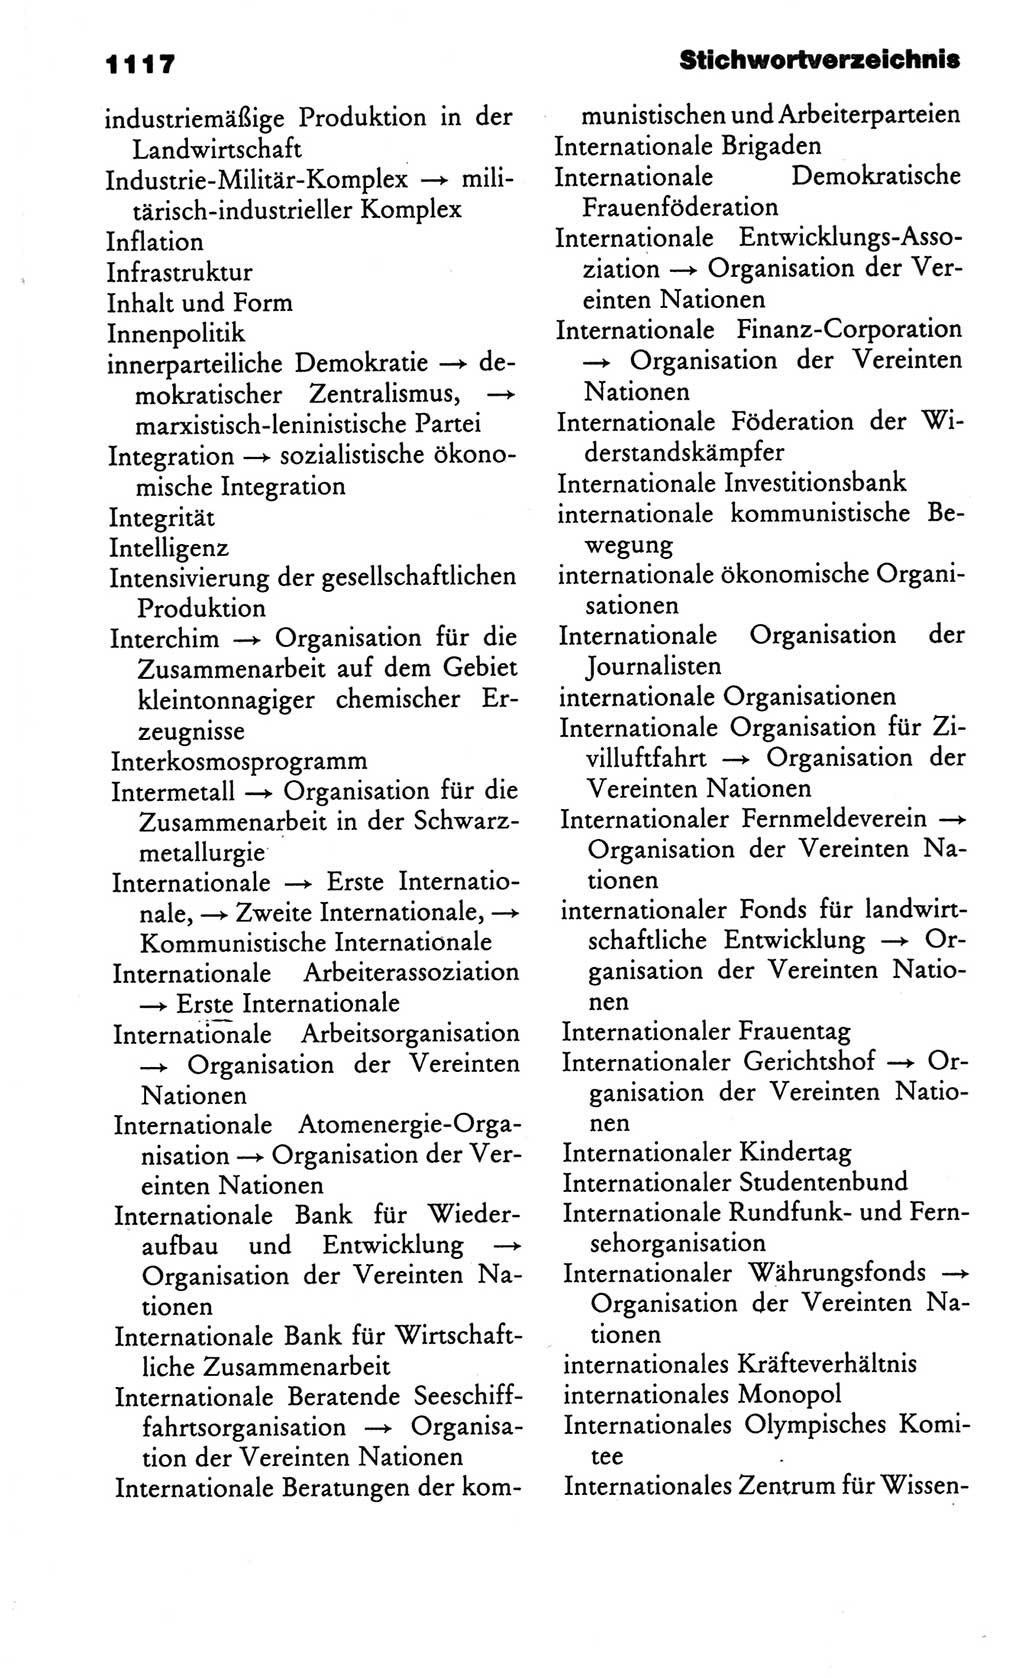 Kleines politisches Wörterbuch [Deutsche Demokratische Republik (DDR)] 1986, Seite 1117 (Kl. pol. Wb. DDR 1986, S. 1117)